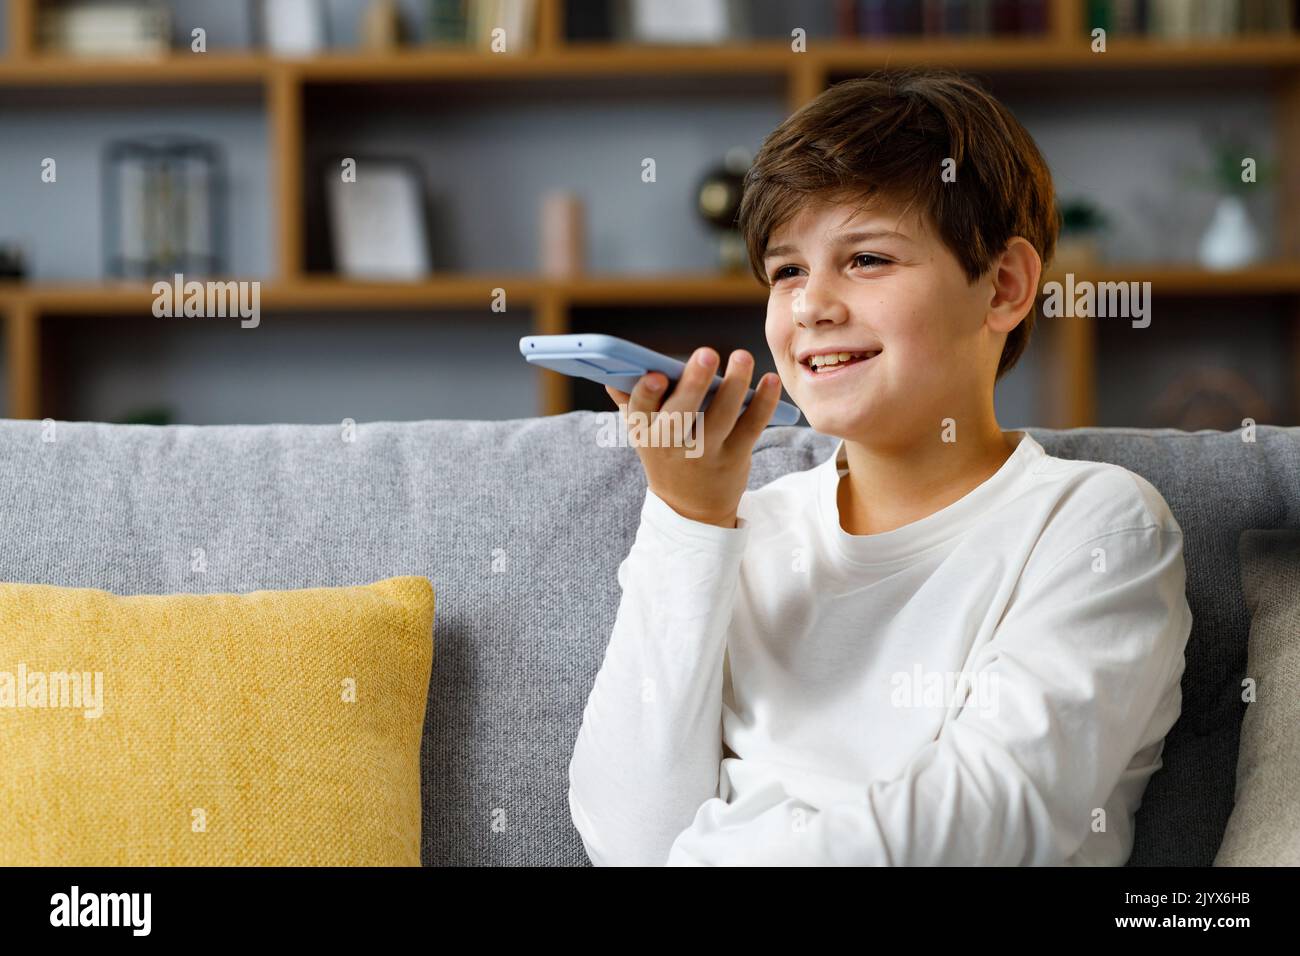 Junger netter Junge, der Sprachnachricht auf dem Smartphone aufzeichnet. Lächelnder Teenager mit der App des virtuellen Assistenten, der zu Hause beim Coach sitzt. Spracherkennung, Audio Stockfoto